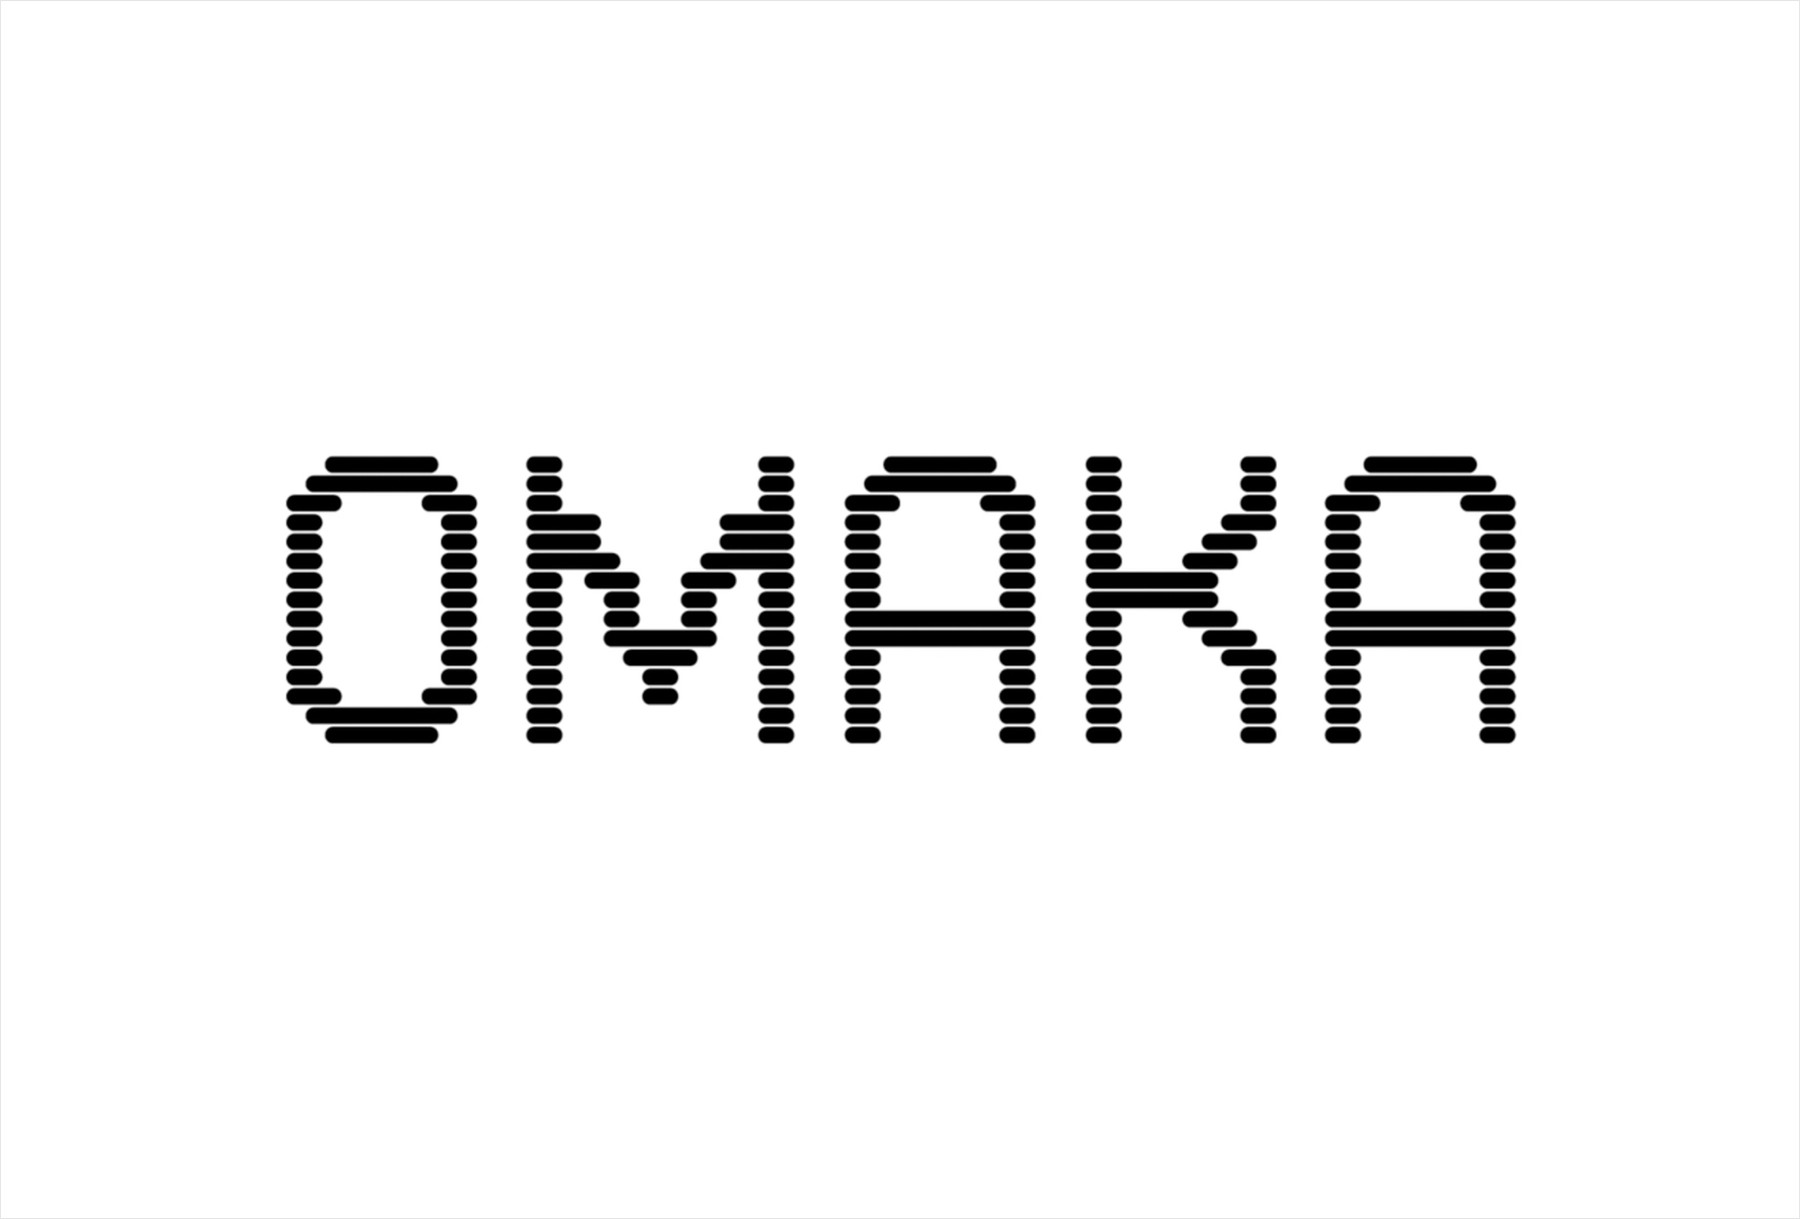 2-omaka-branding-logotype-stockholm-design-lab-2021-bpo.jpg